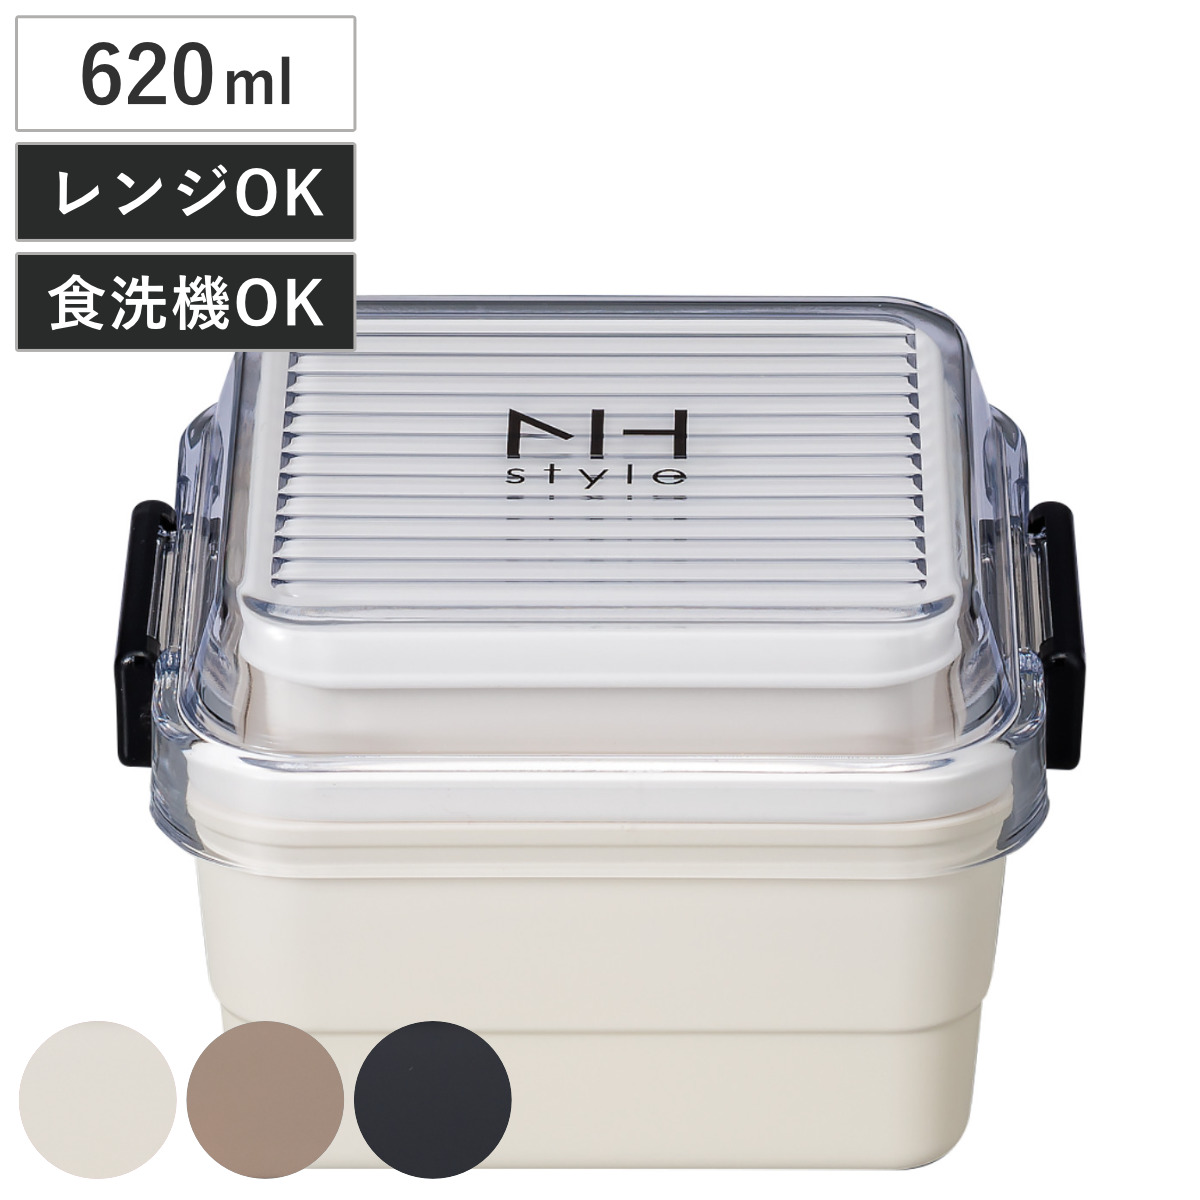 弁当箱 2段 620ml NH style スクエアストレージランチ （ お弁当箱 ランチボックス レンジ対応 食洗機対応 二段 女子 大人 日本製 レンジ